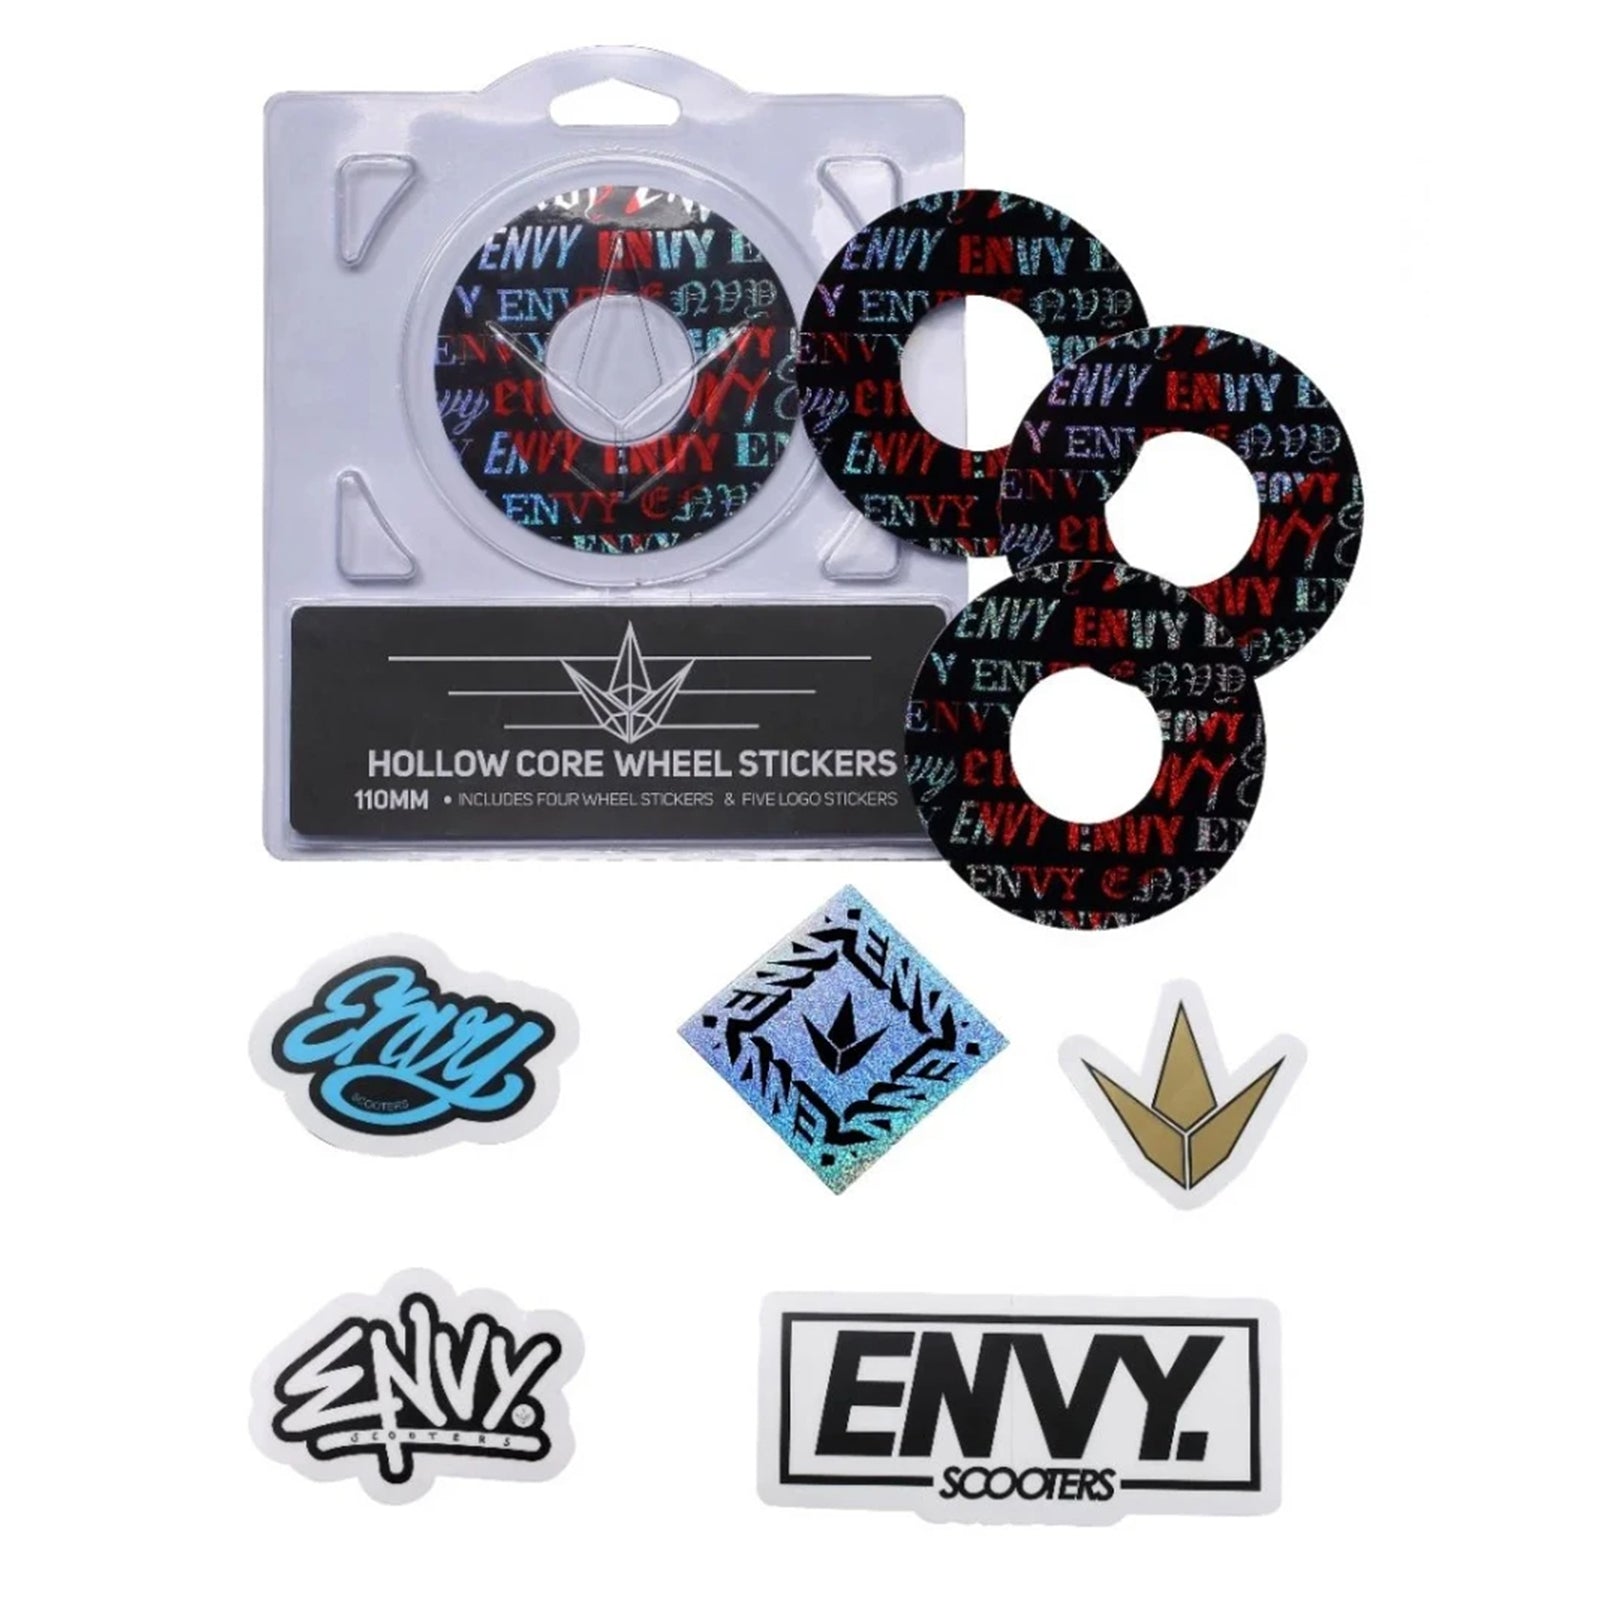 Envy Hollow Core Wheel Stickers, collants de roues 120 mm (modèles variés)